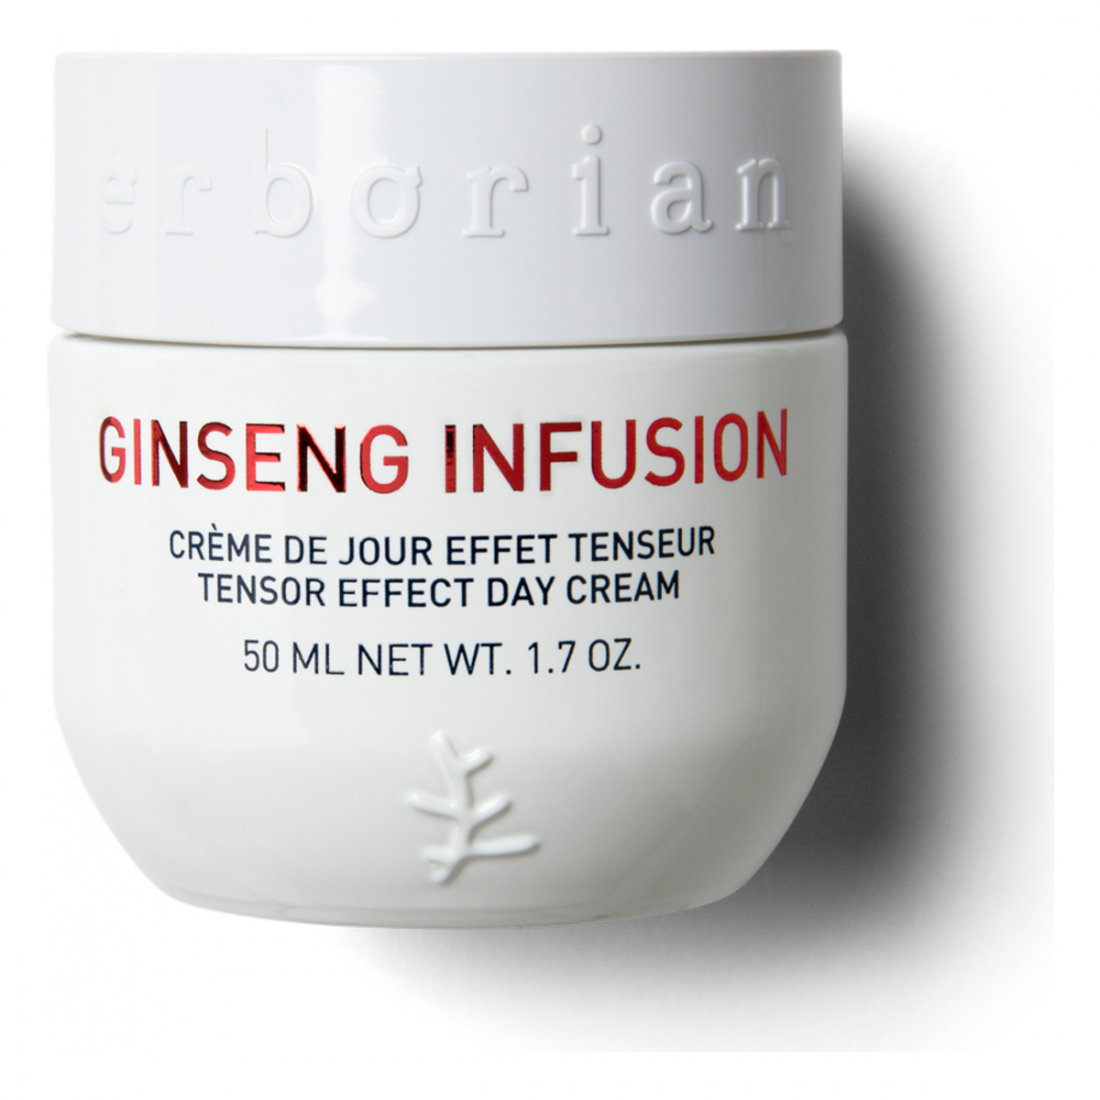 'Ginseng Infusion' Crème De Jour Effet Tenseur - 50 ml